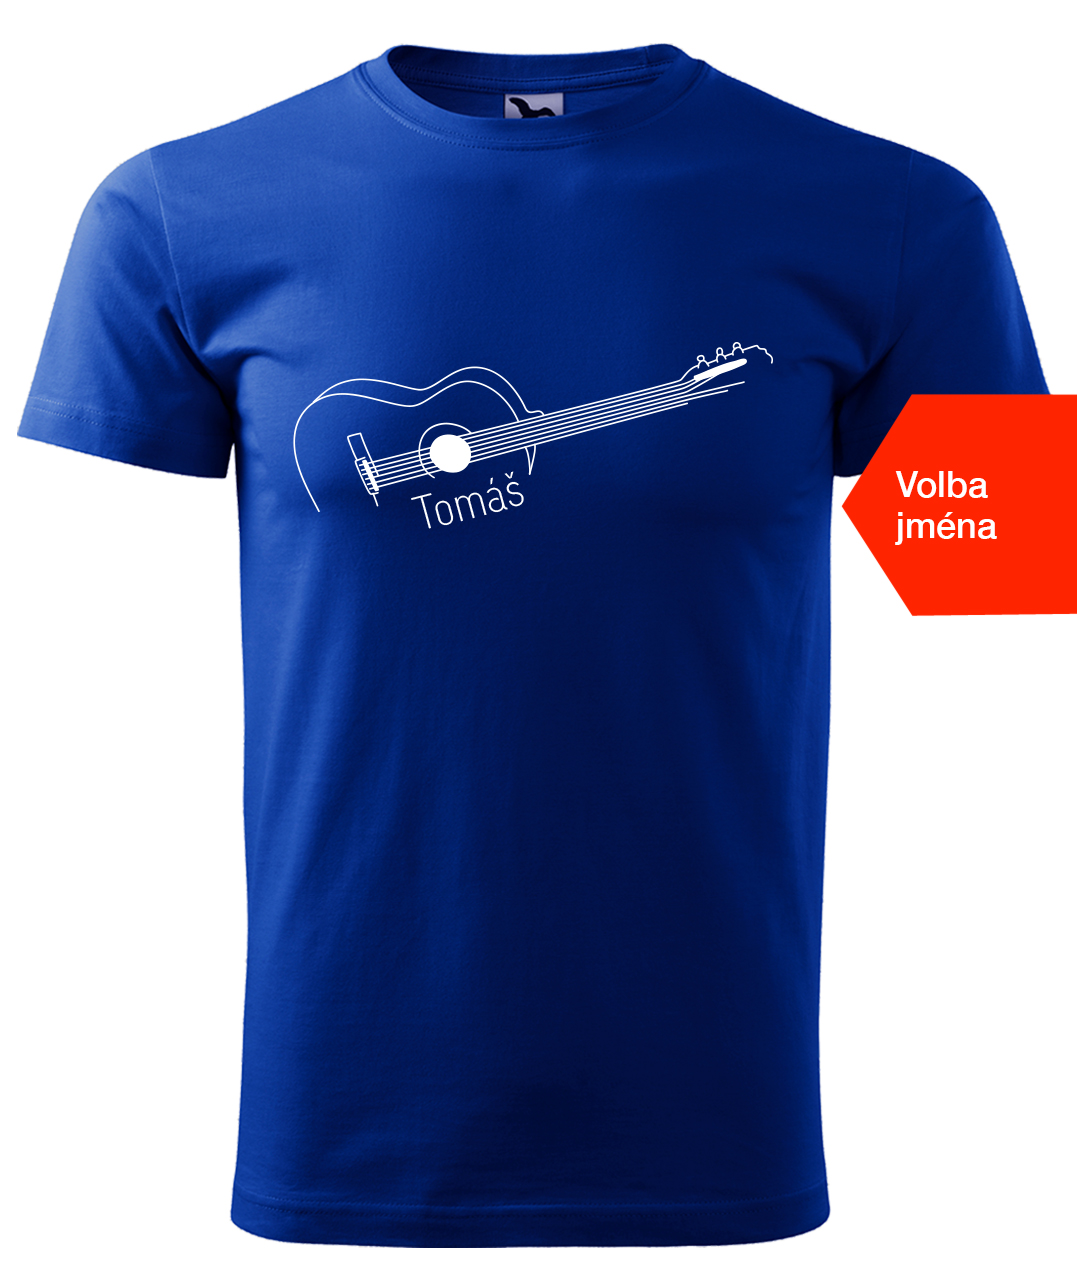 Dětské tričko s kytarou se jménem - Stylizovaná kytara Velikost: 10 let / 146 cm, Barva: Královská modrá (05), Délka rukávu: Krátký rukáv